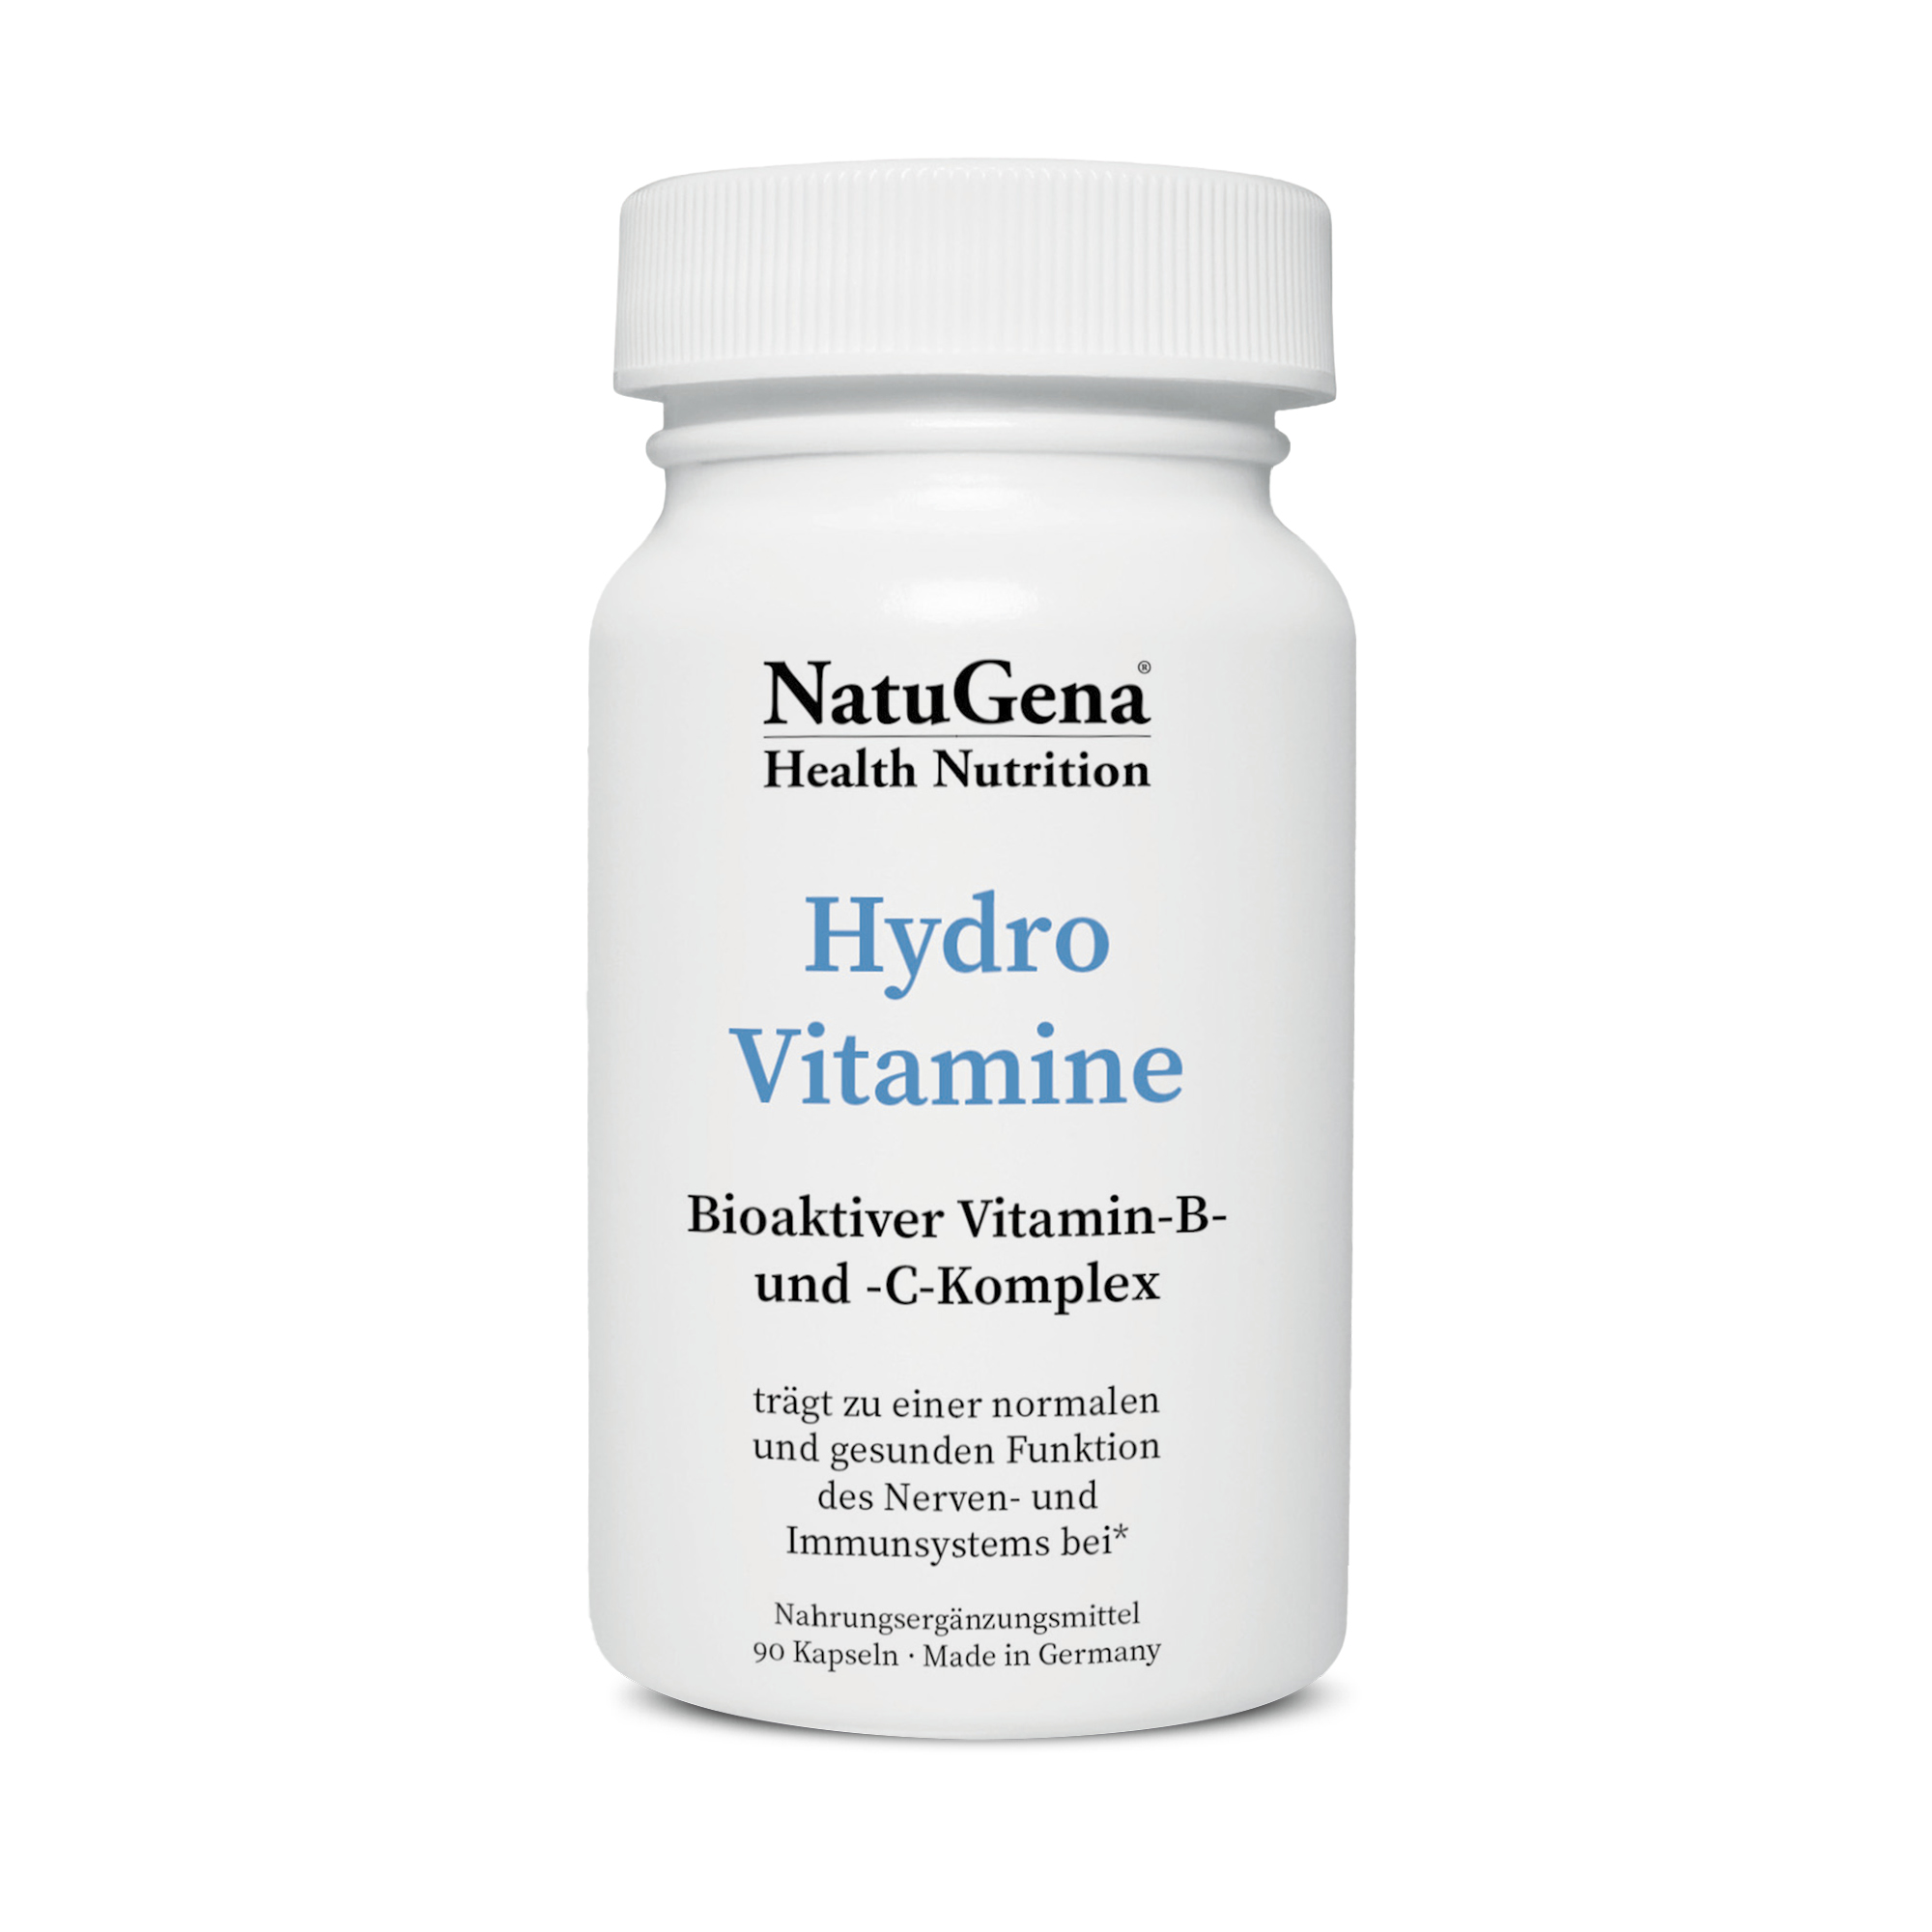 NatuGena HydroVitamine | 90 Kapseln | Vitamin B und C Komplex | enthält bioaktive Vitaminformen | vegan | gluten- und laktosefrei